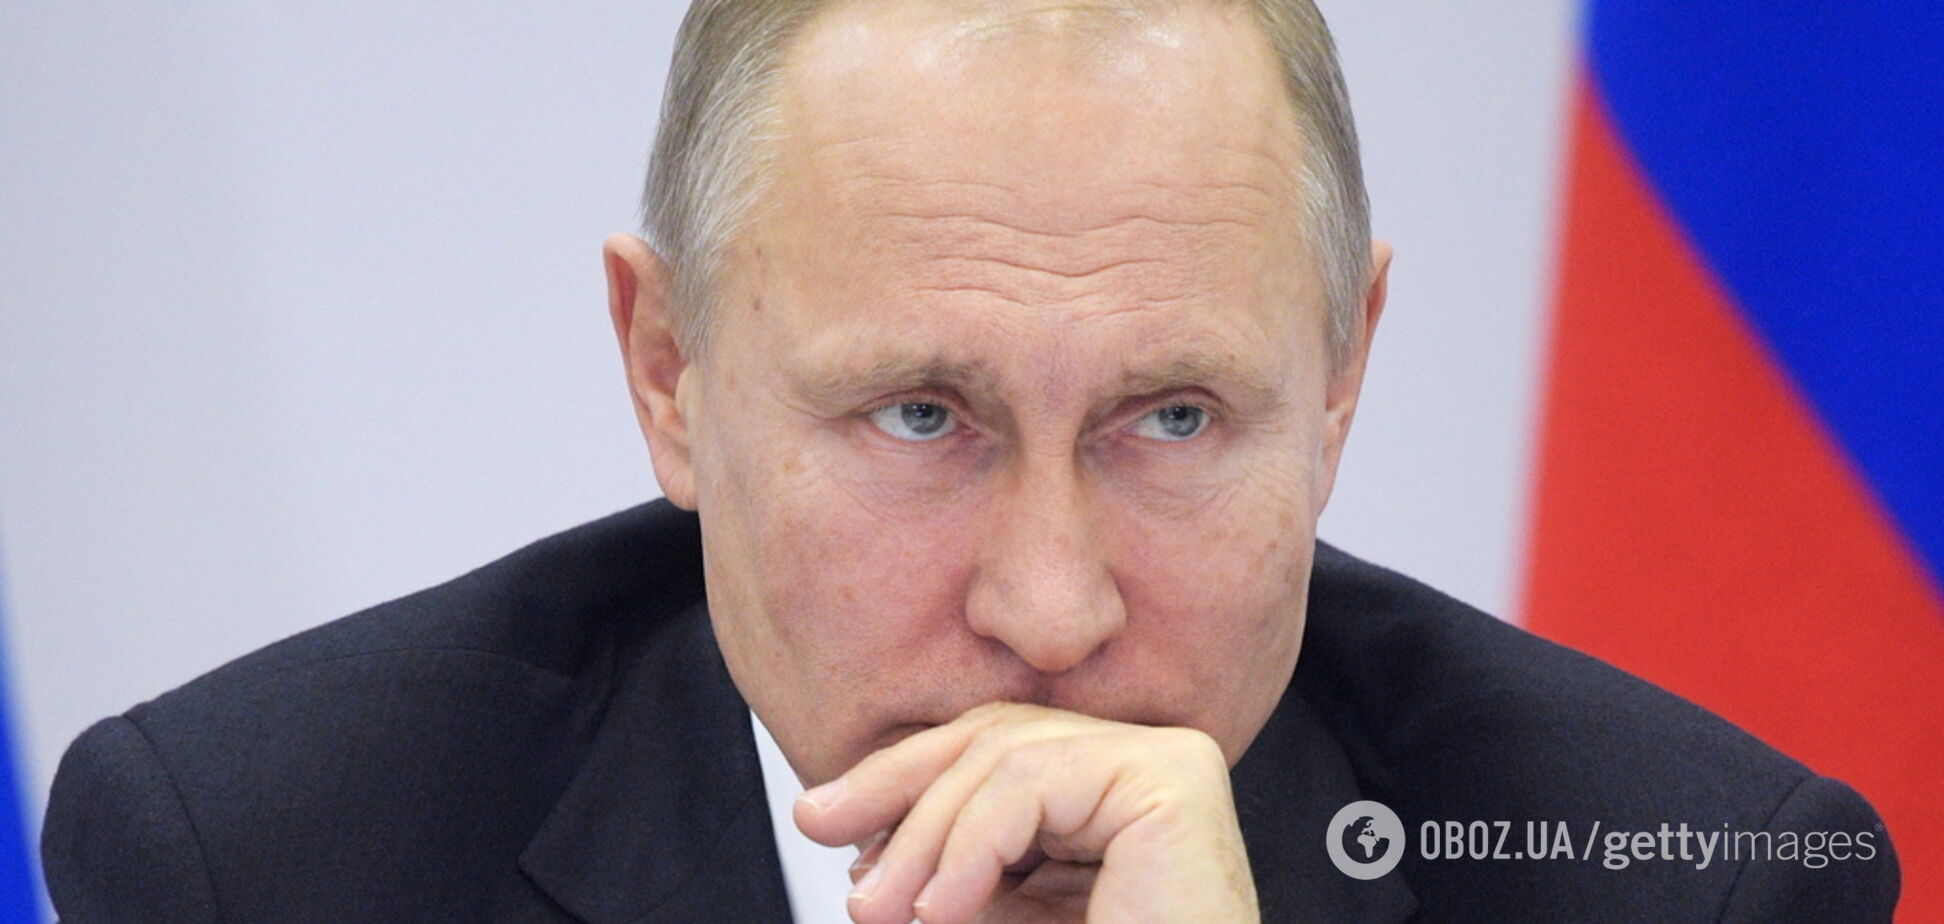 Друг Путина в Европе пожаловался на давление из-за отказа принять санкции против России